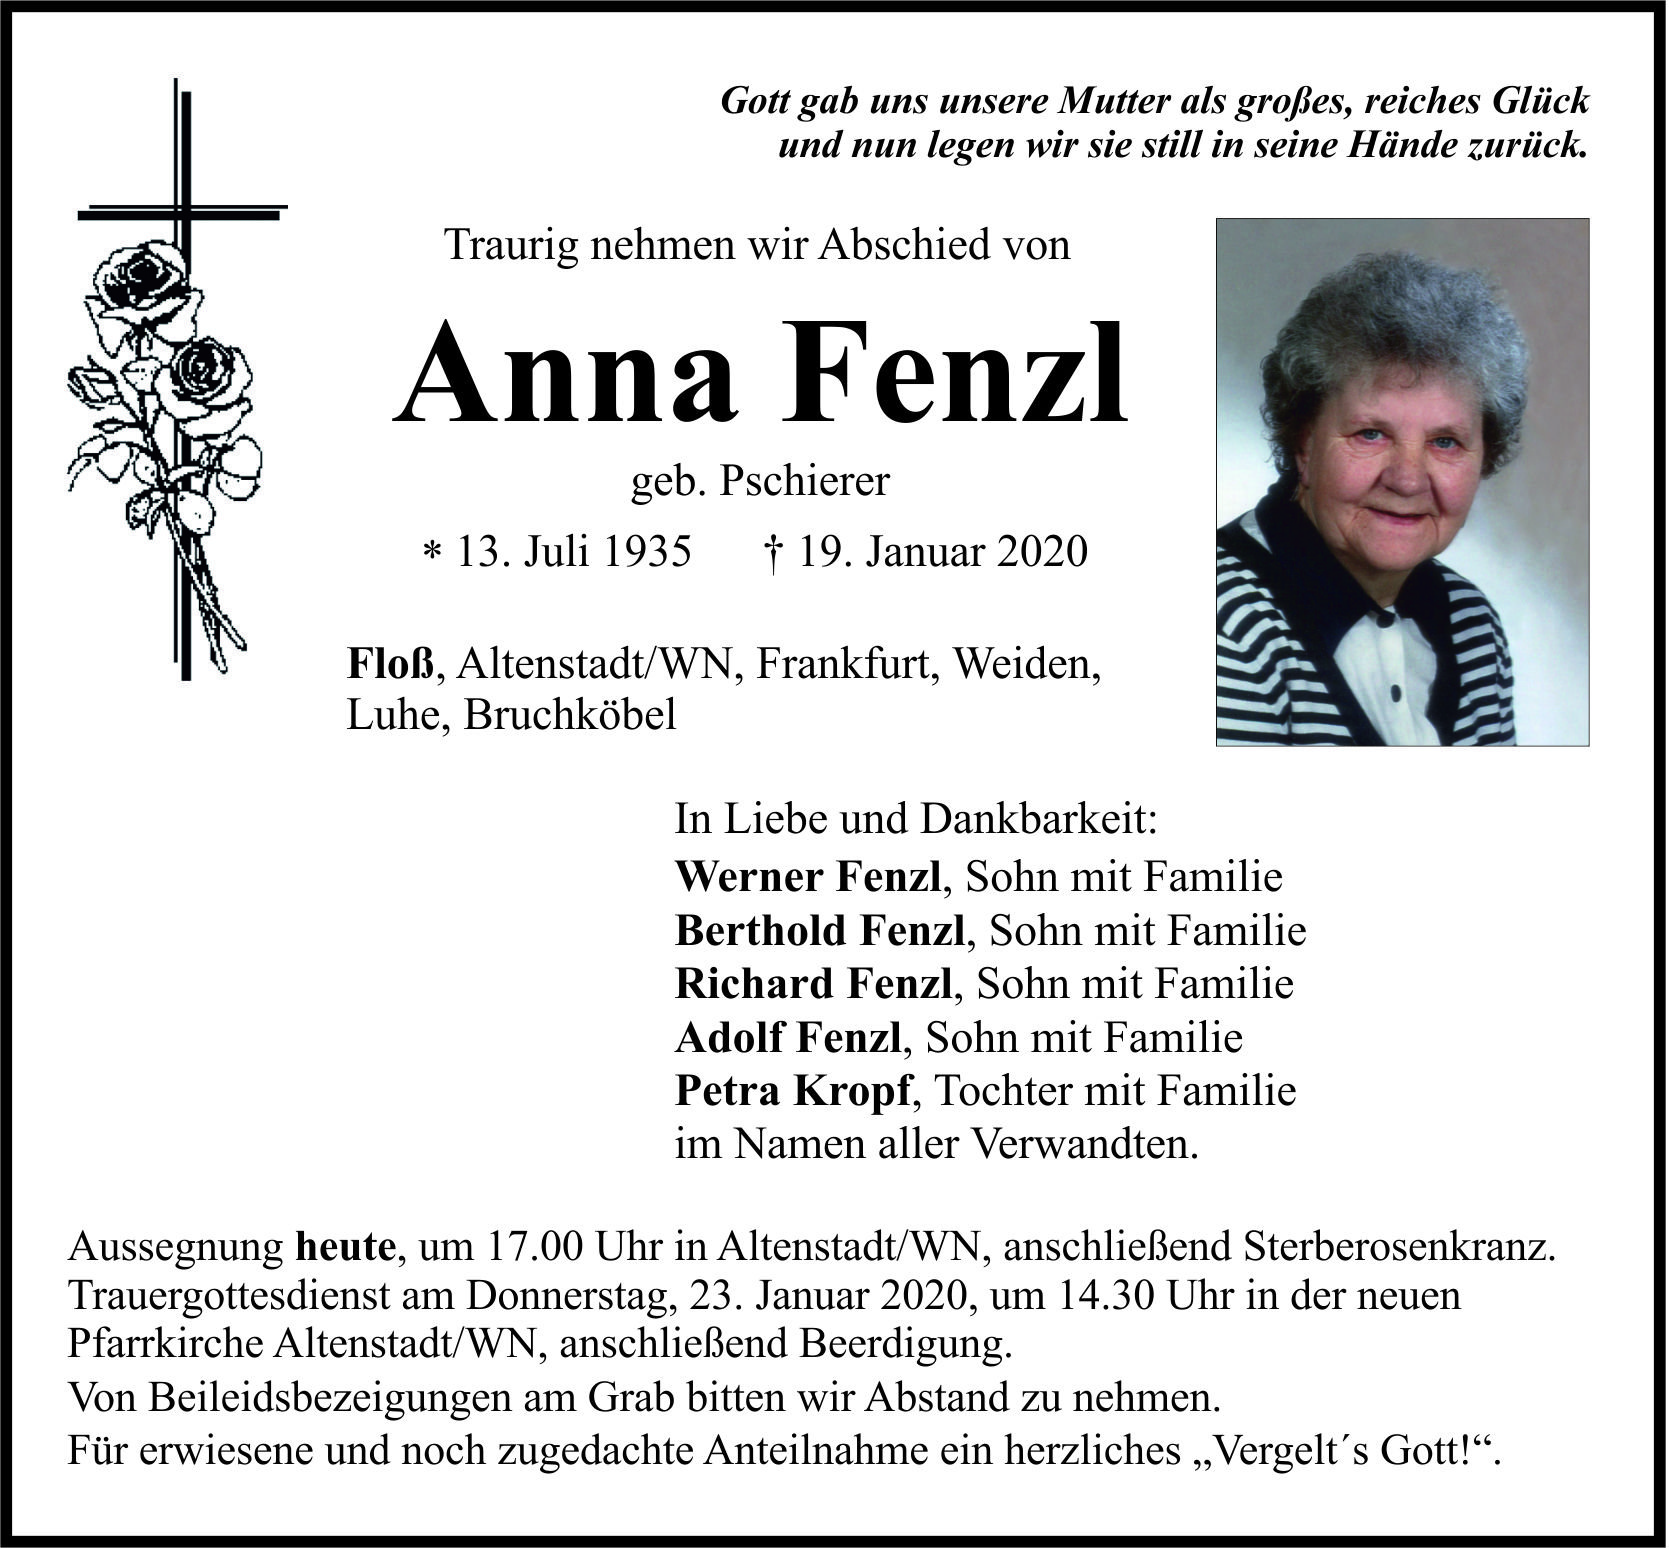 Traueranzeige Anna Fenzl, Floß